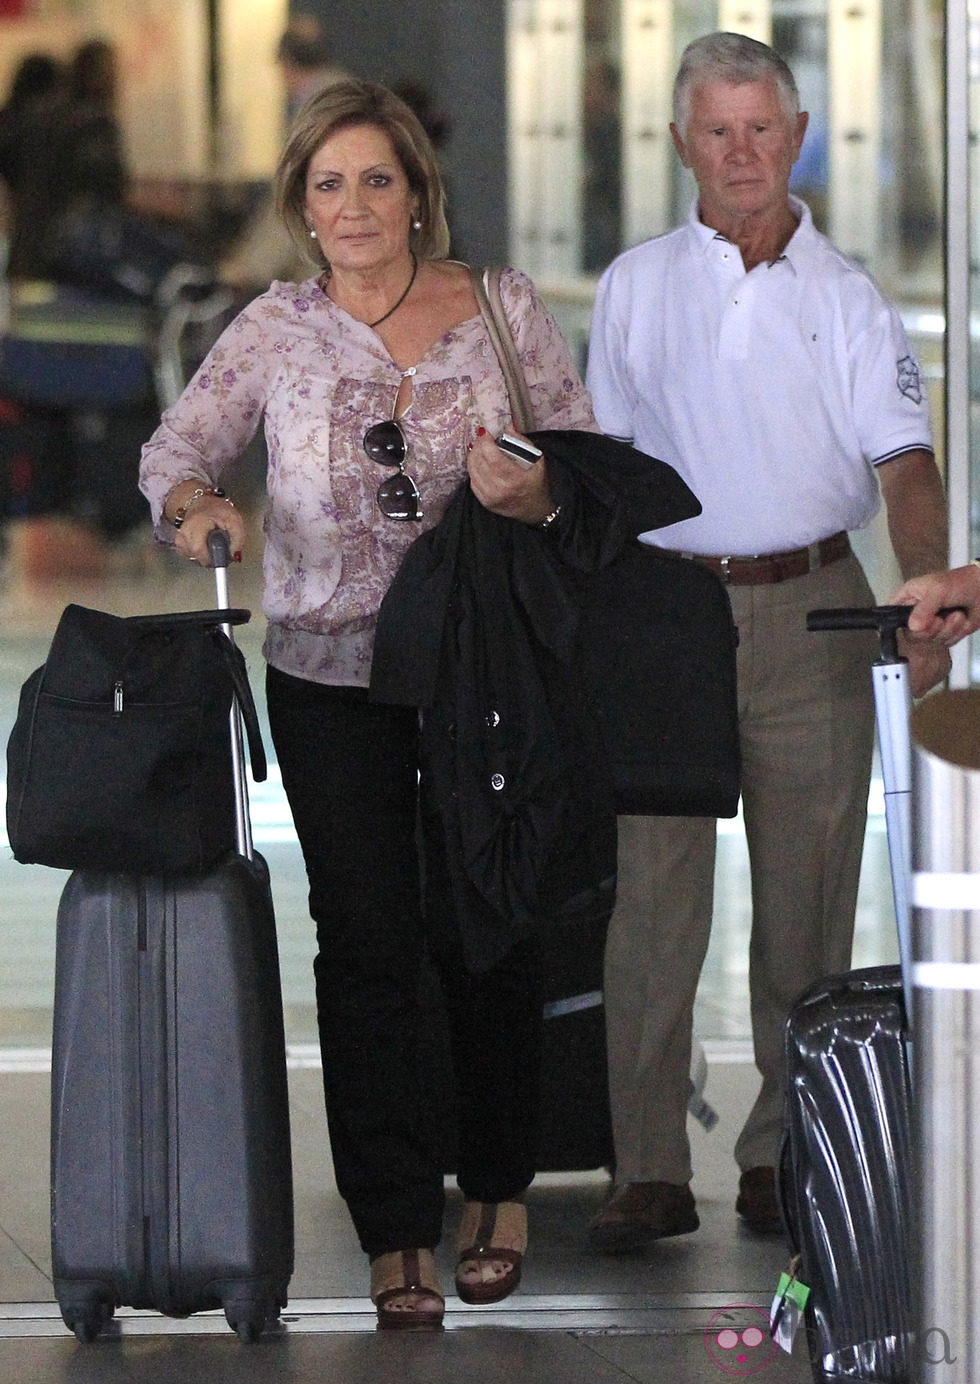 María Ferre y Jose Bisbal, padres de David Bisbal, en el aeropuerto de Madrid